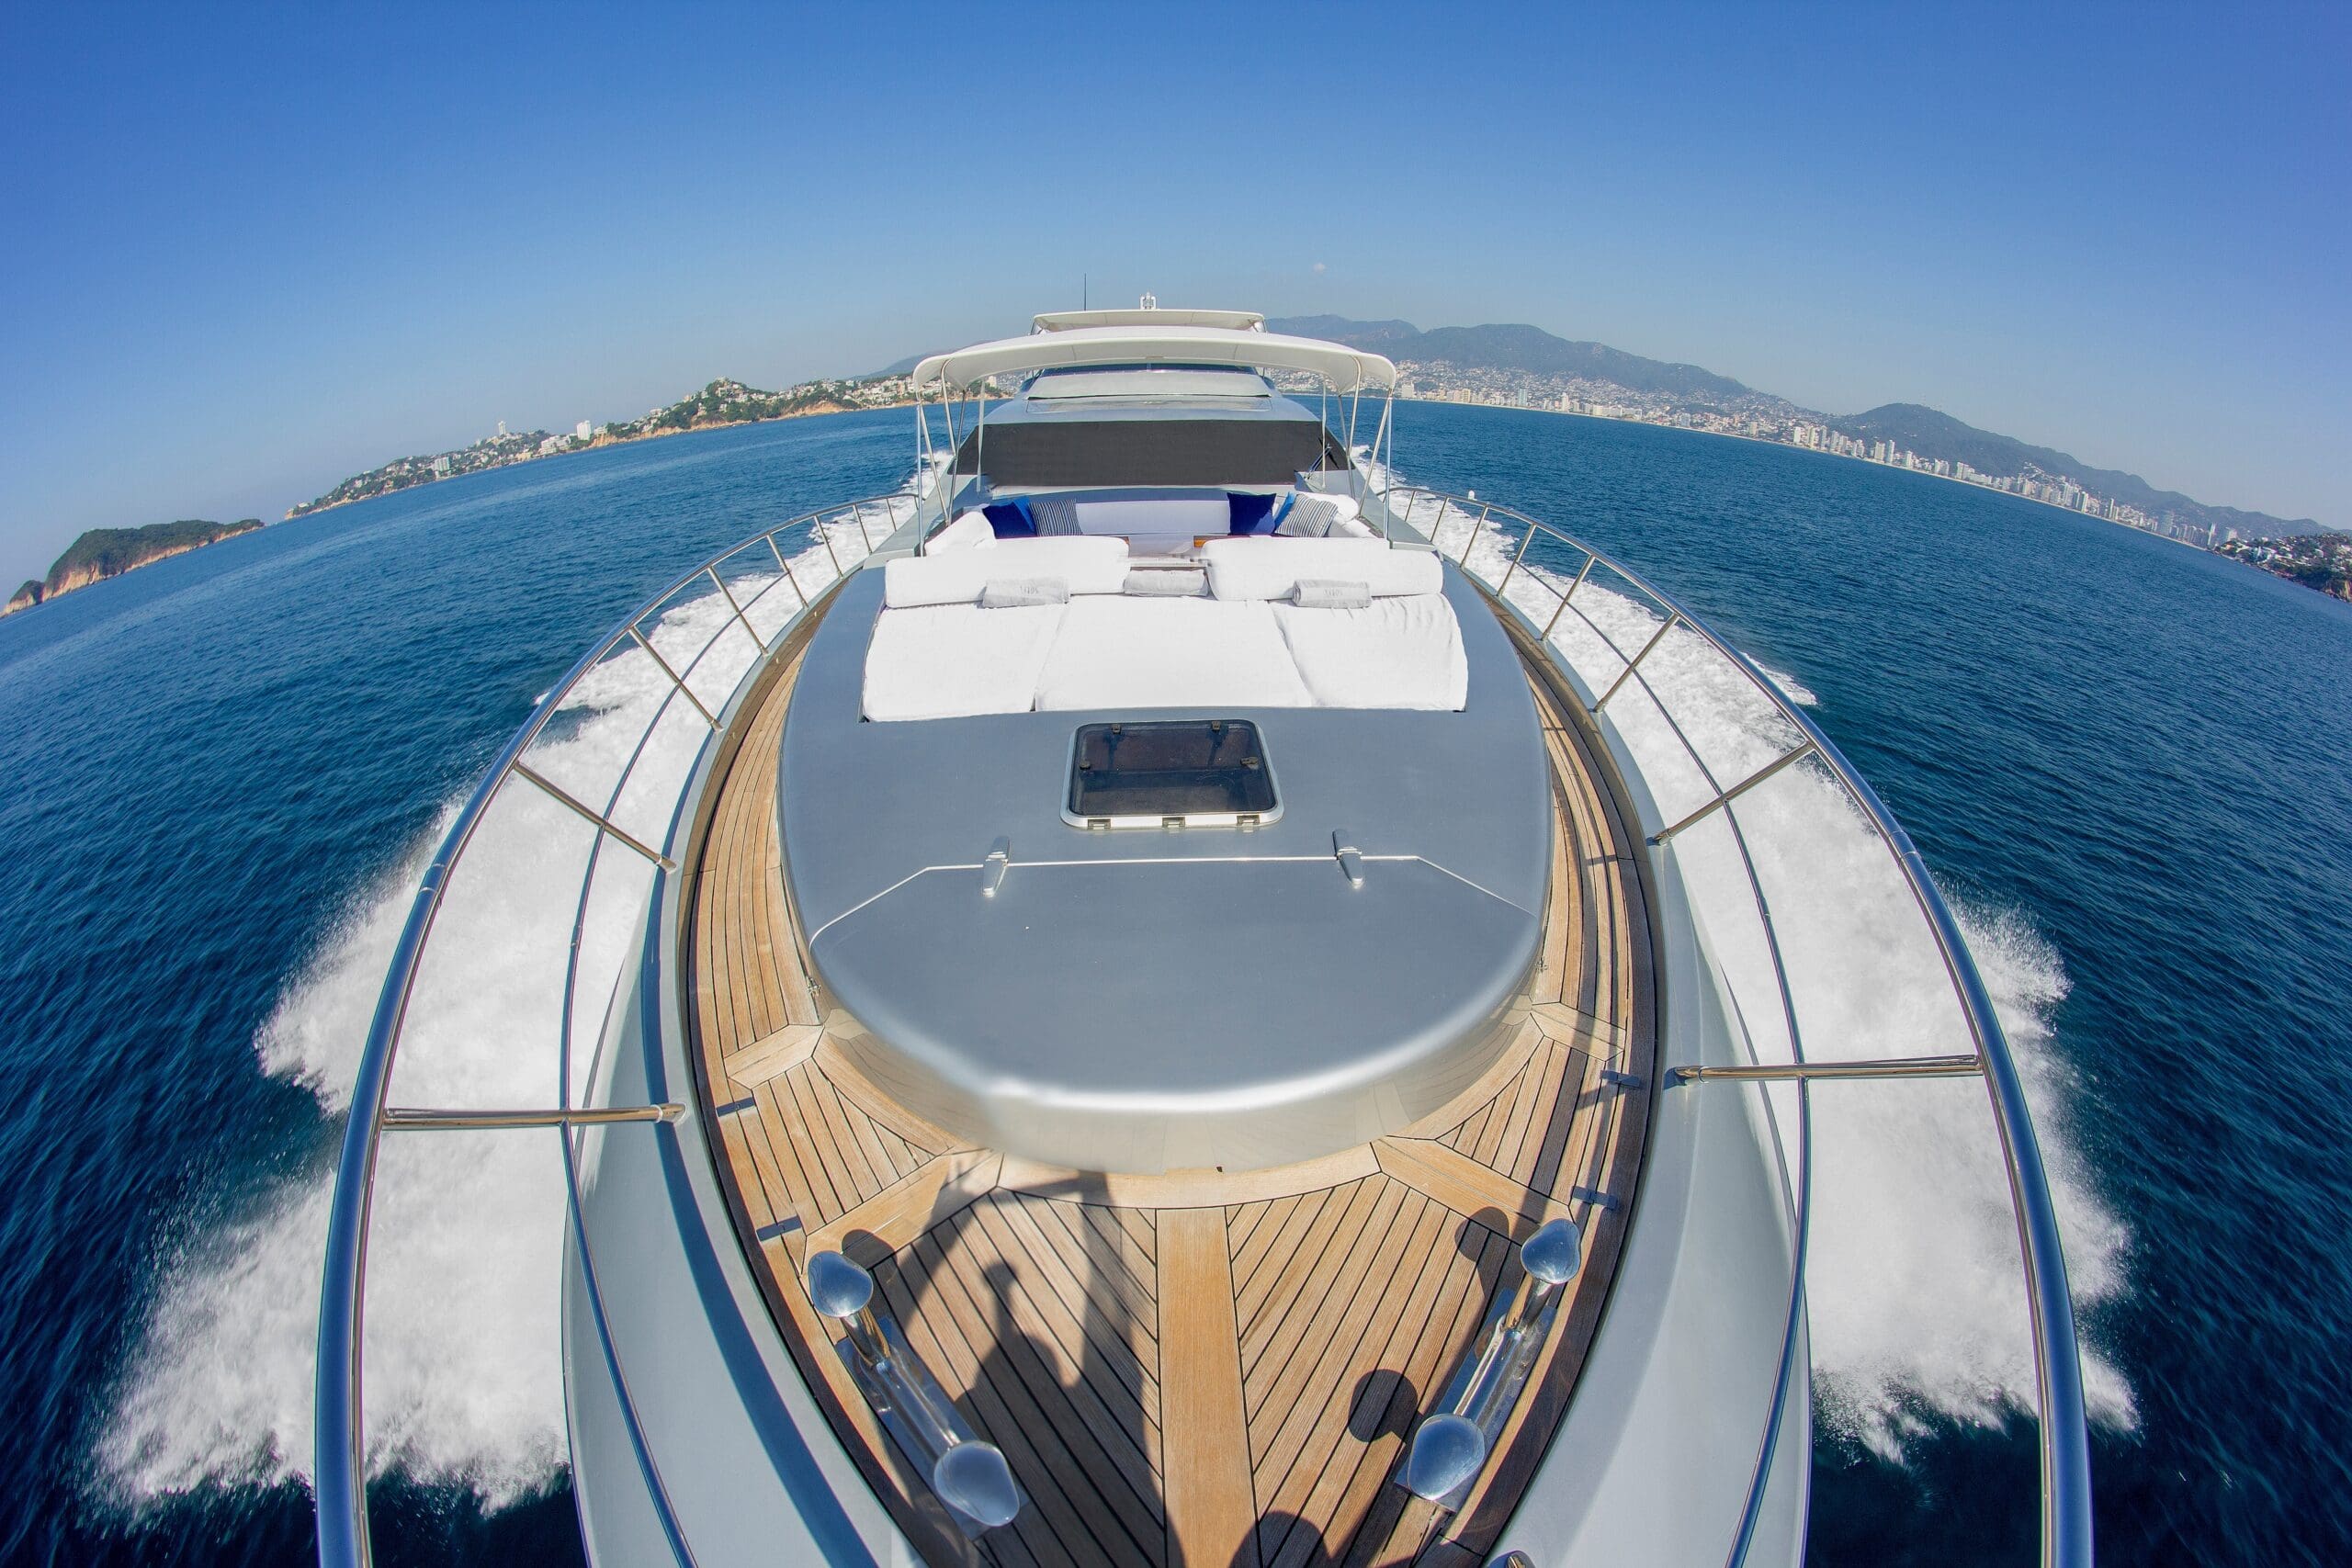 luxury-boat-2022-11-02-16-33-36-utc-scal